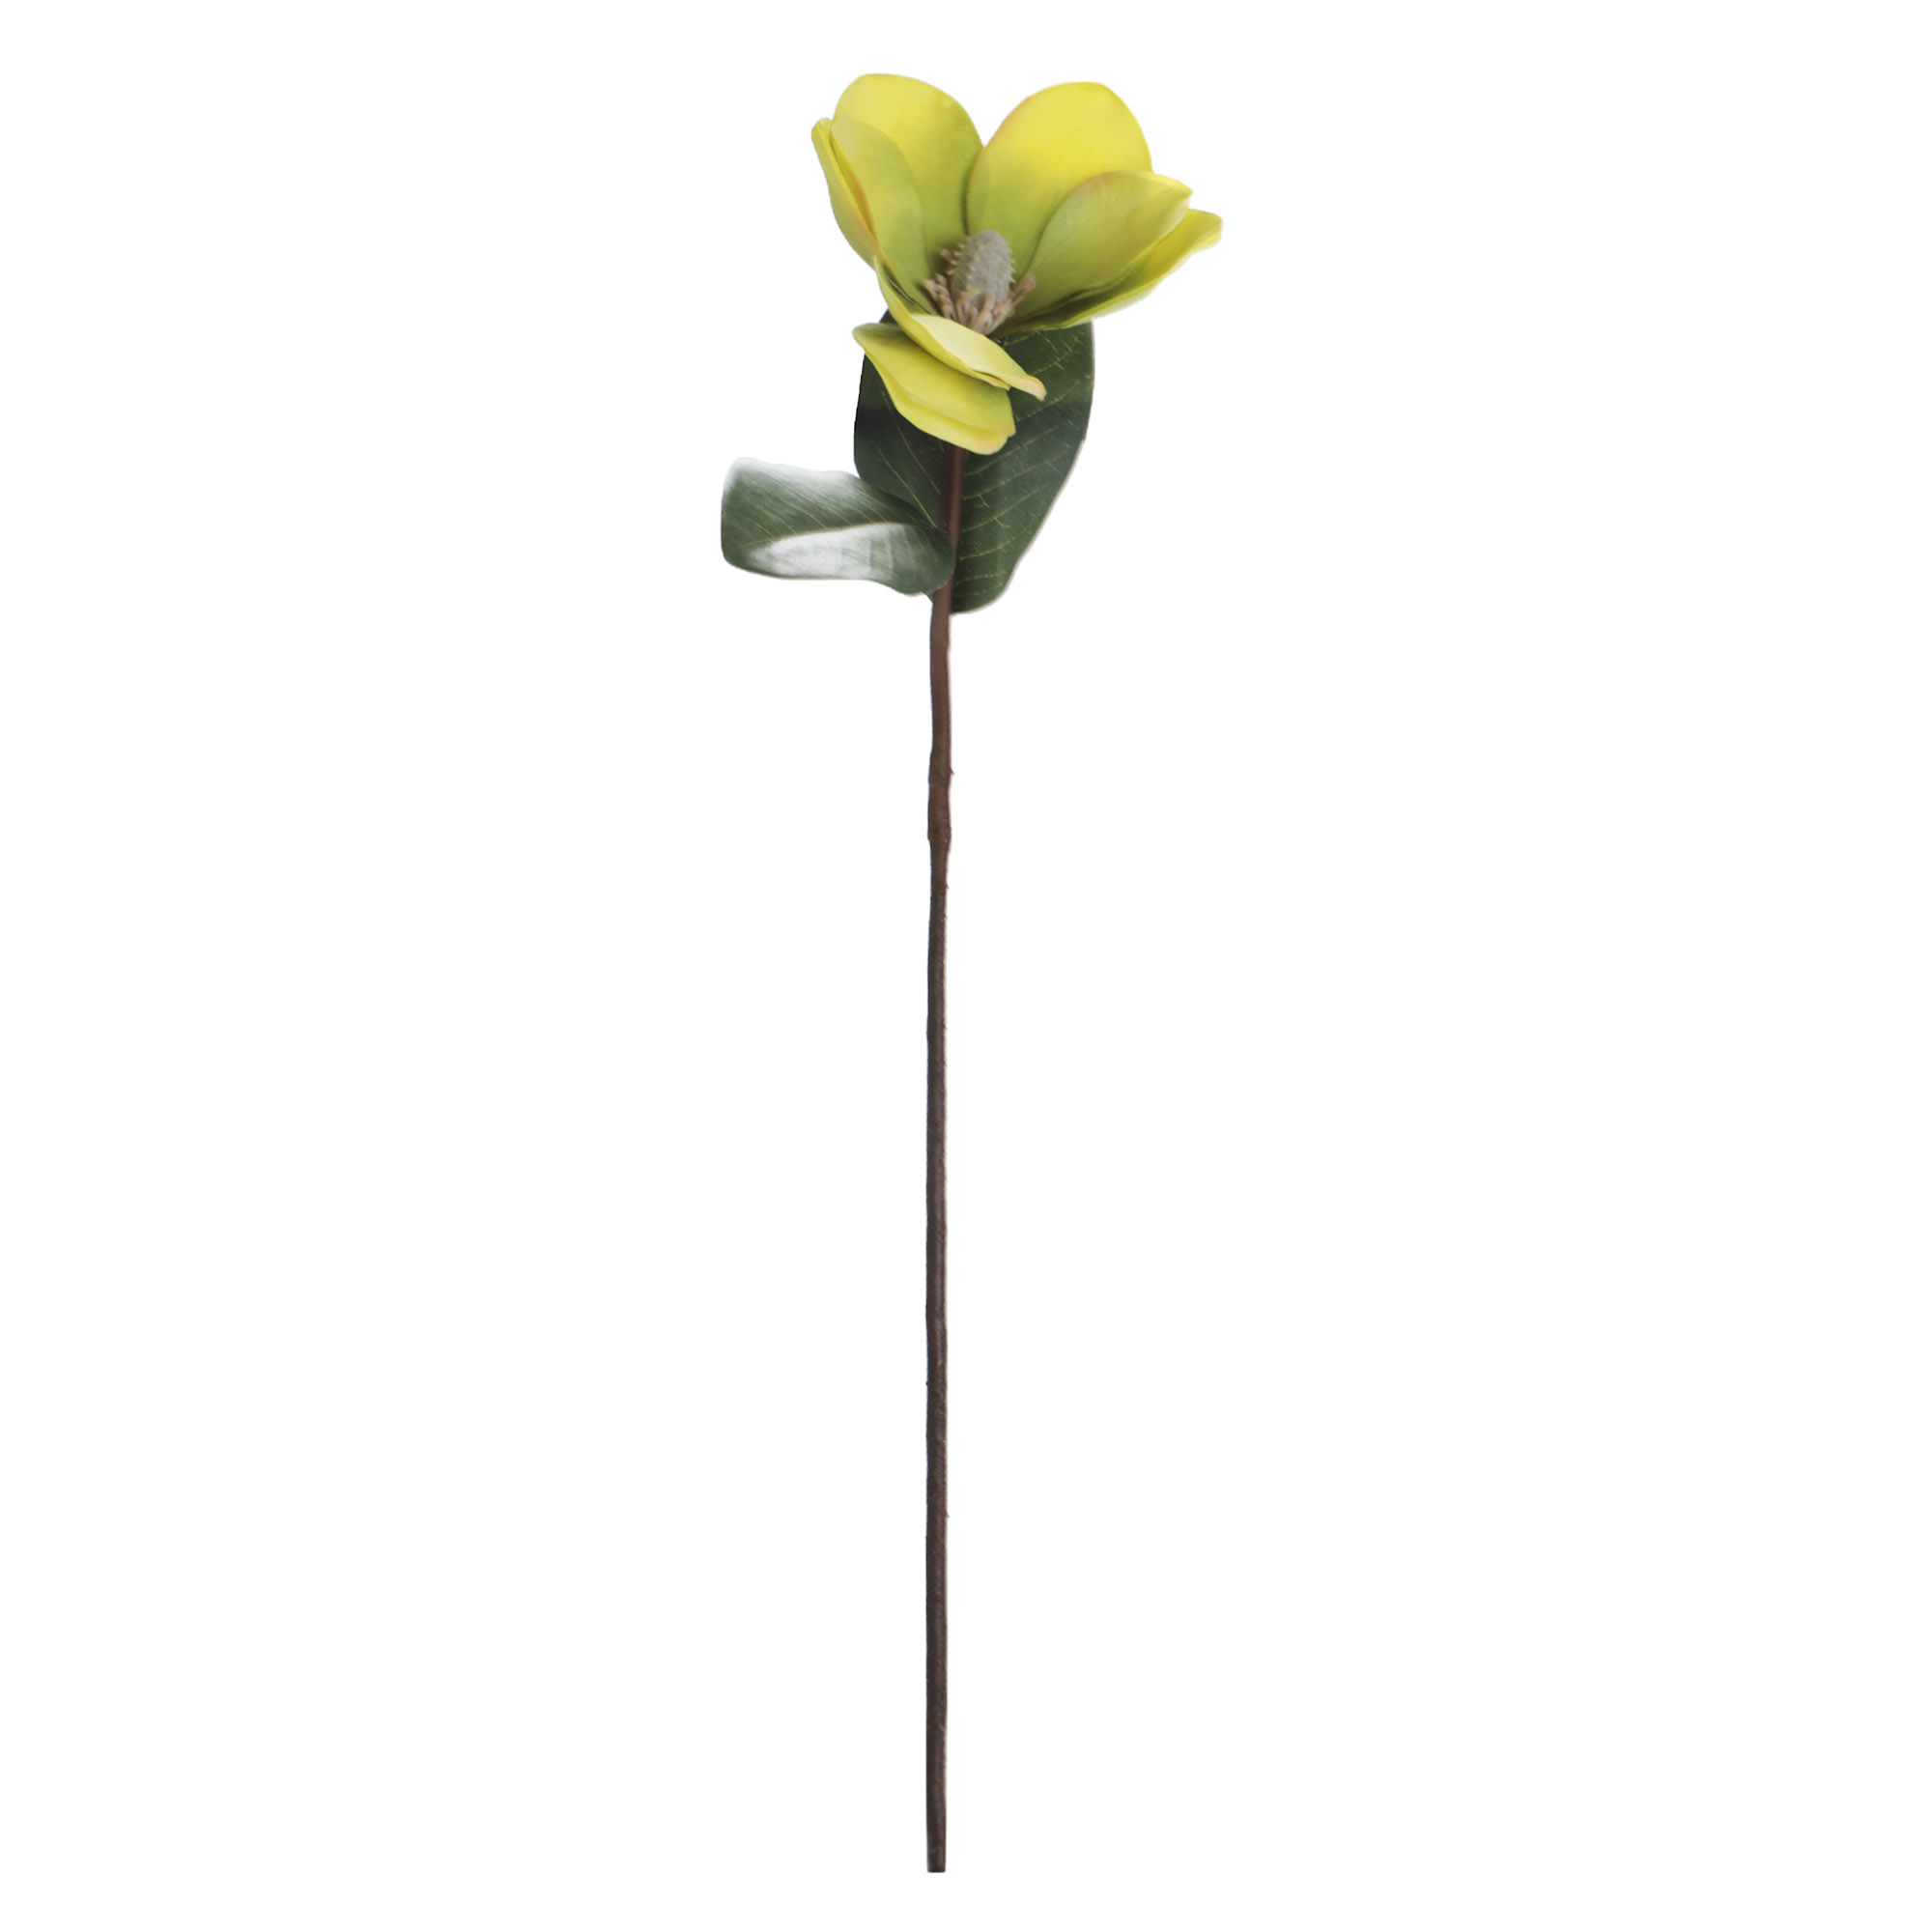 Цветок искусственный Конэко-О Магнолия h65 см цветок магнолии зеленого цвета высота 65 см конэко о